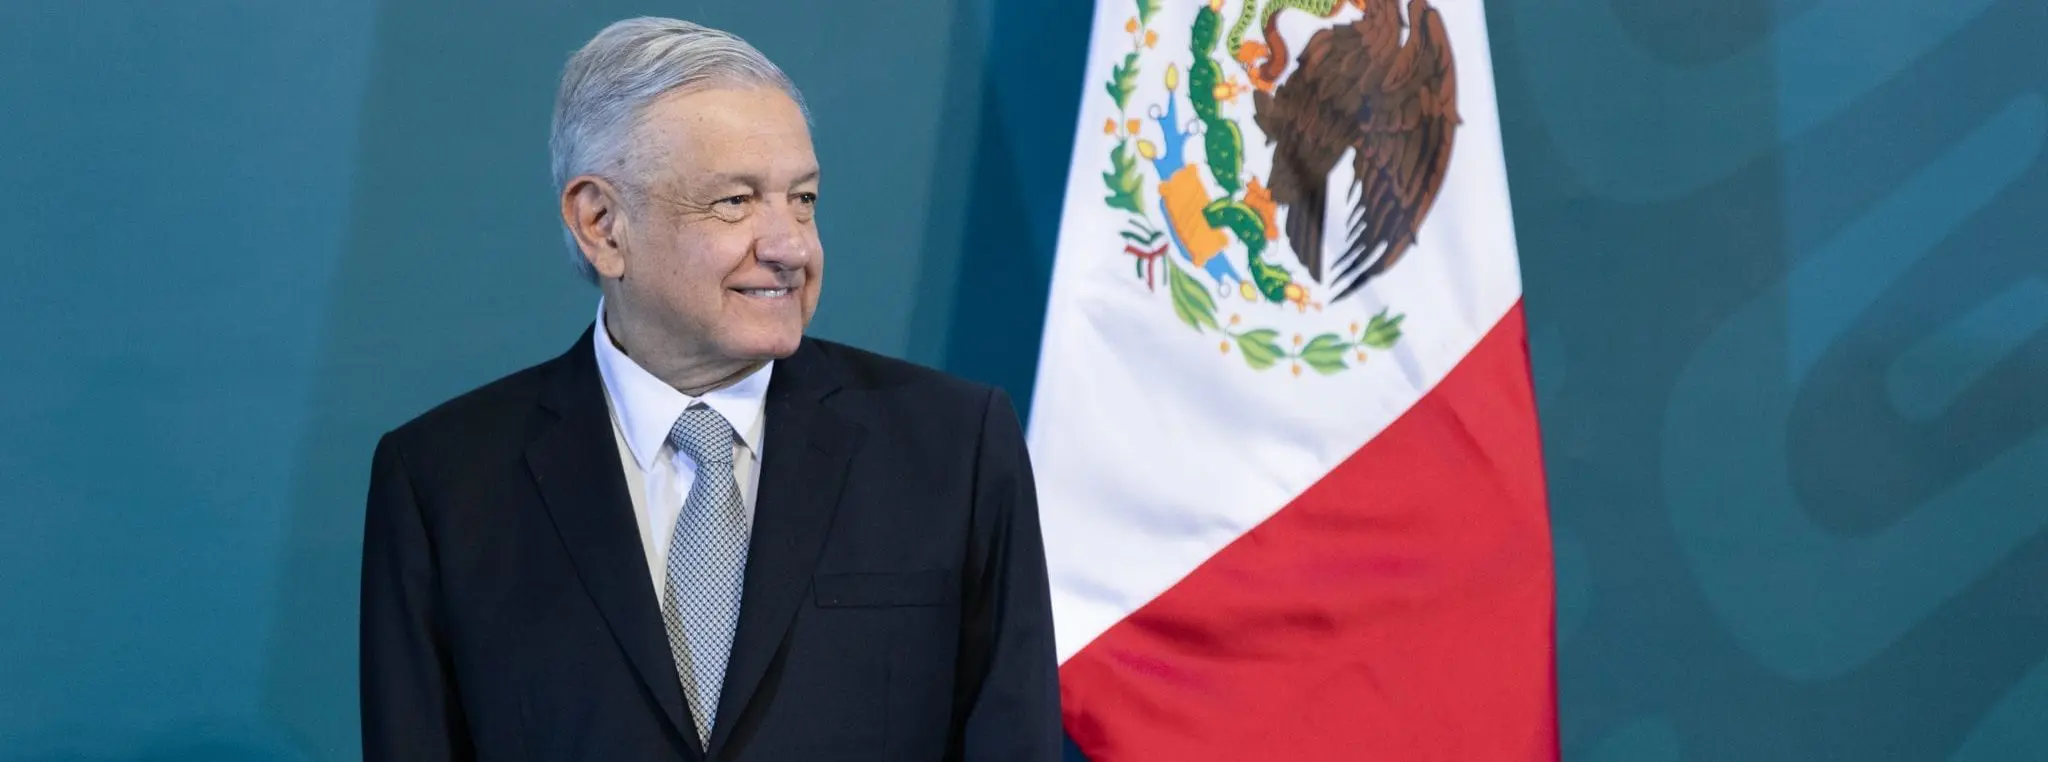 Messico al bivio sulla riforma elettorale